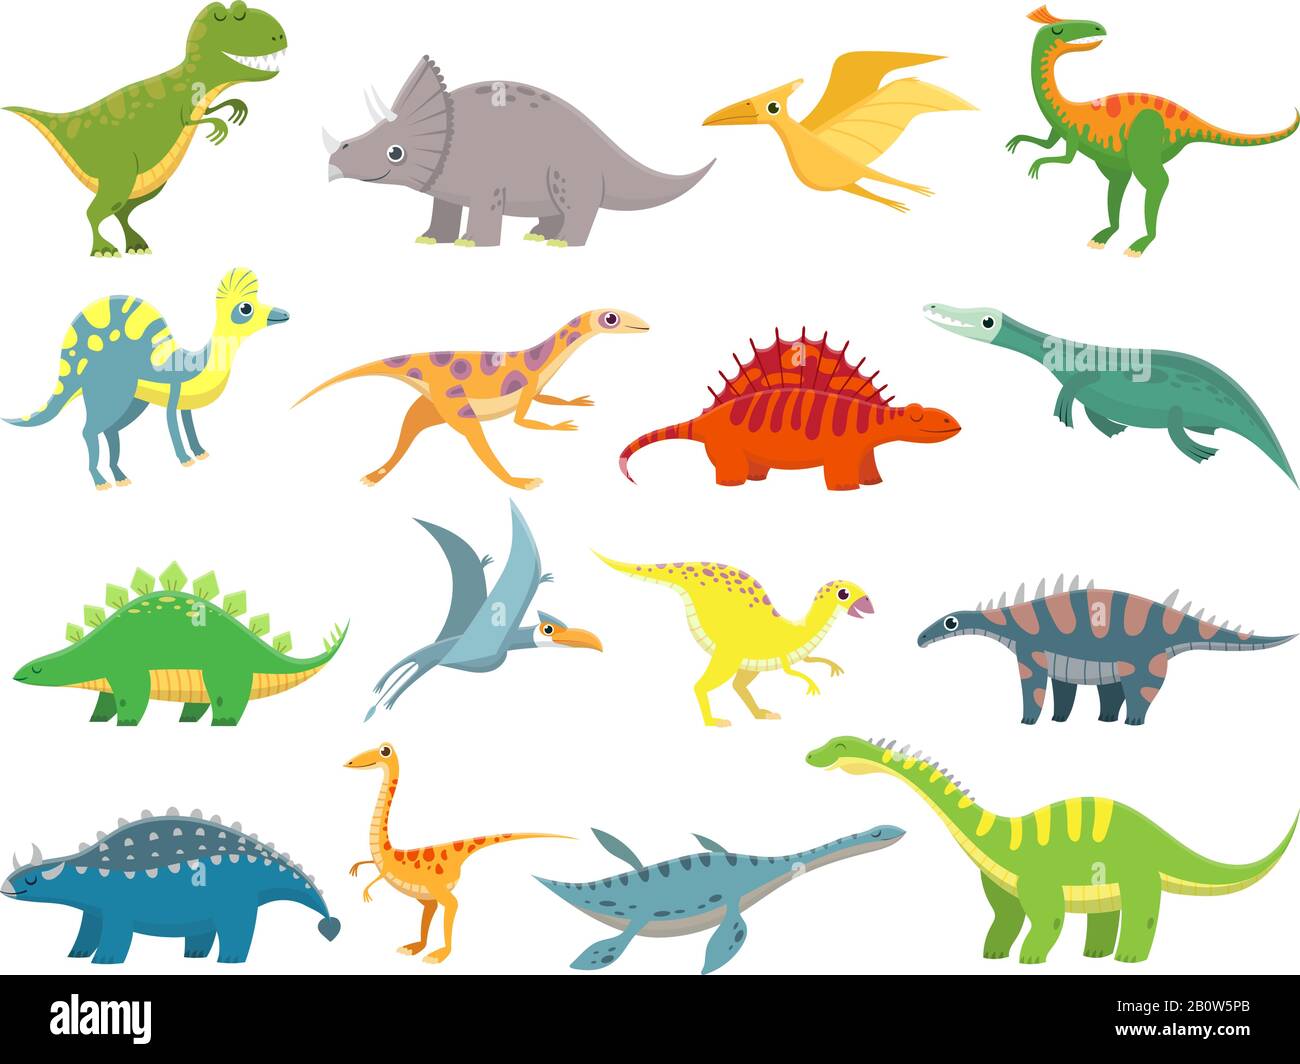 Joli dinosaure pour bébé. Dragon de dinosaures et personnage drôle de dino. Jeu d'illustrations vectorielles de dinosaures à motif dessin animé fantaisie Illustration de Vecteur